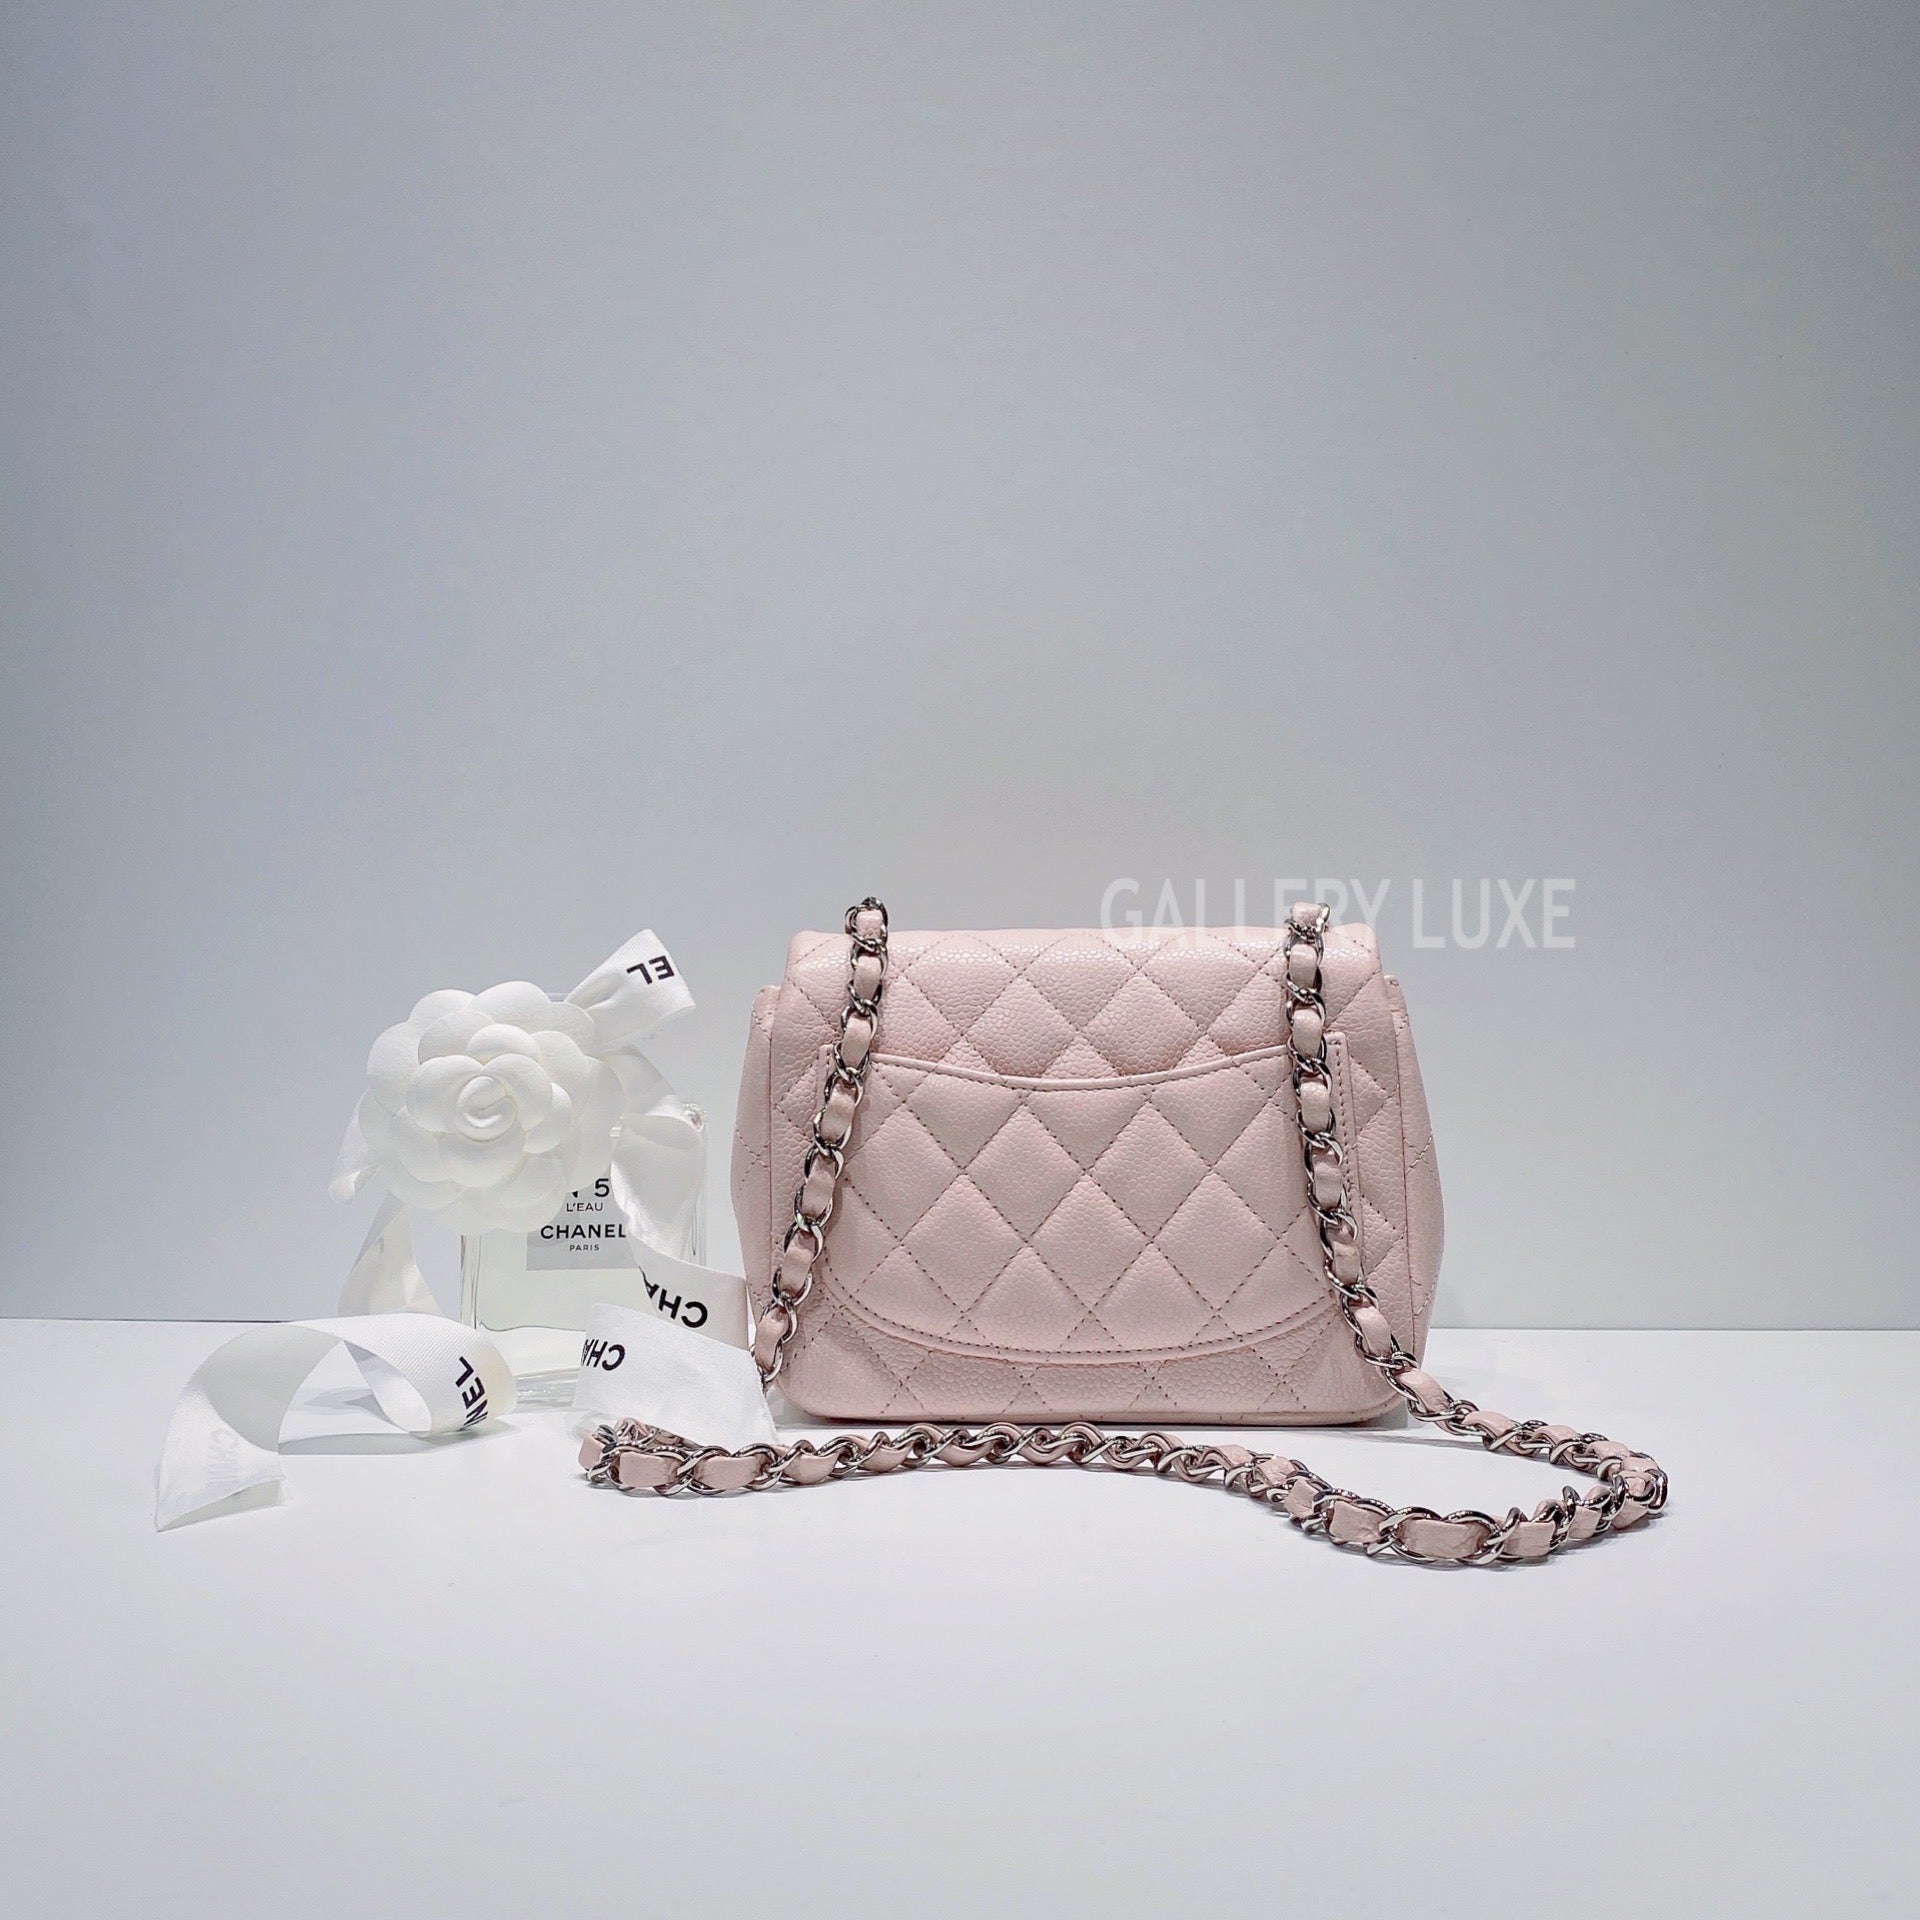 No.3449-Chanel Caviar Classic Flap Mini 17cm – Gallery Luxe